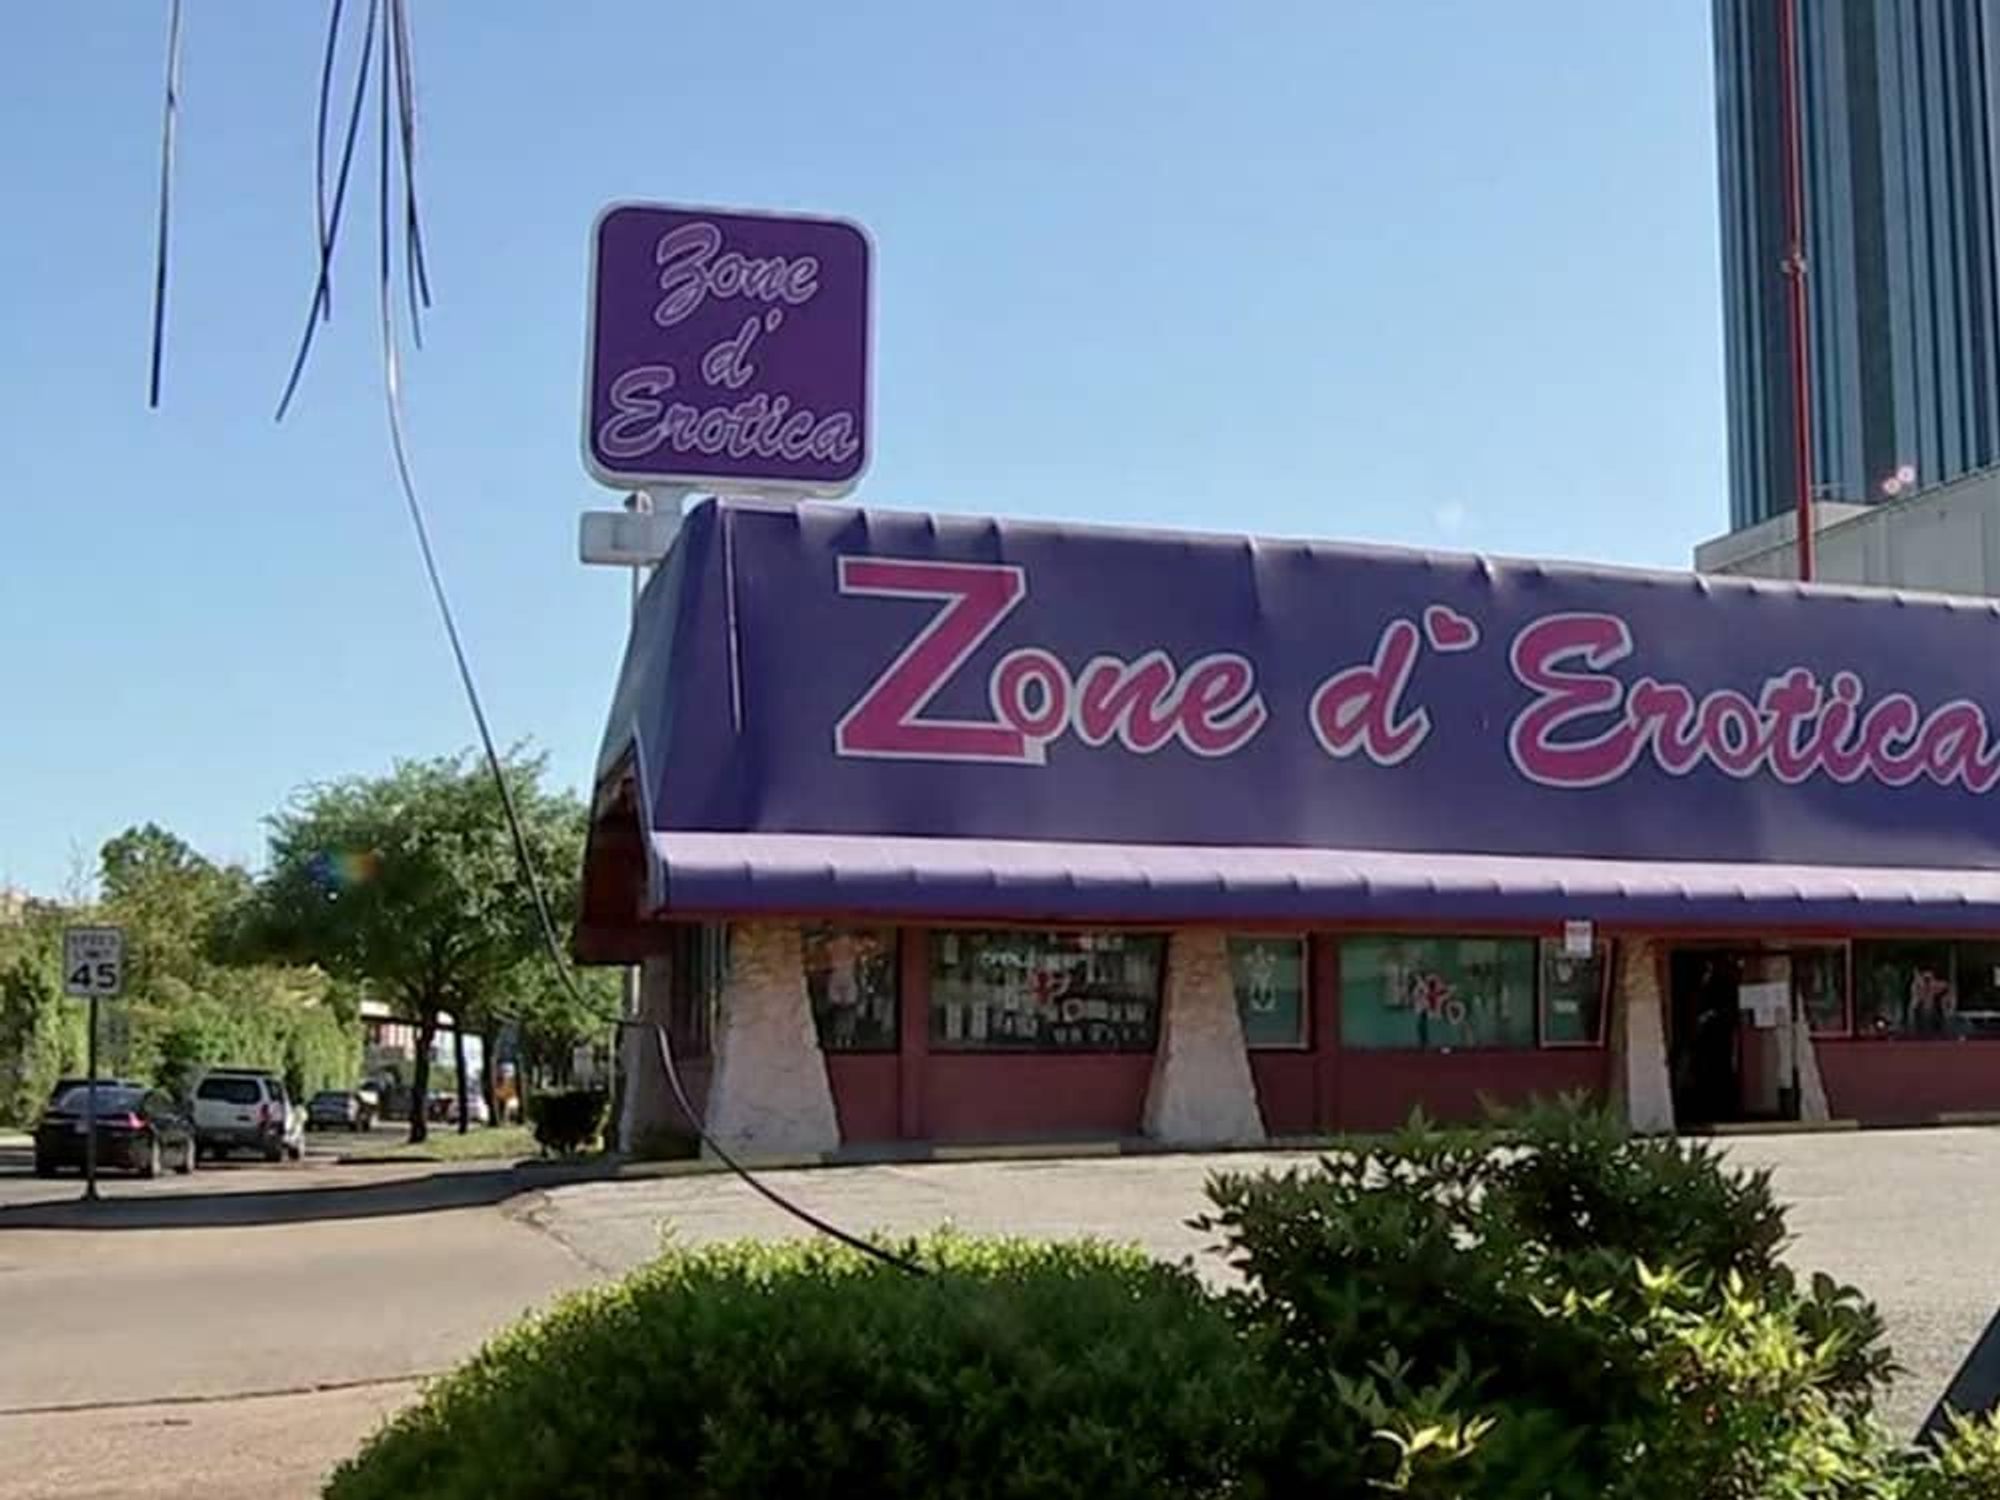 Zone d'Erotica